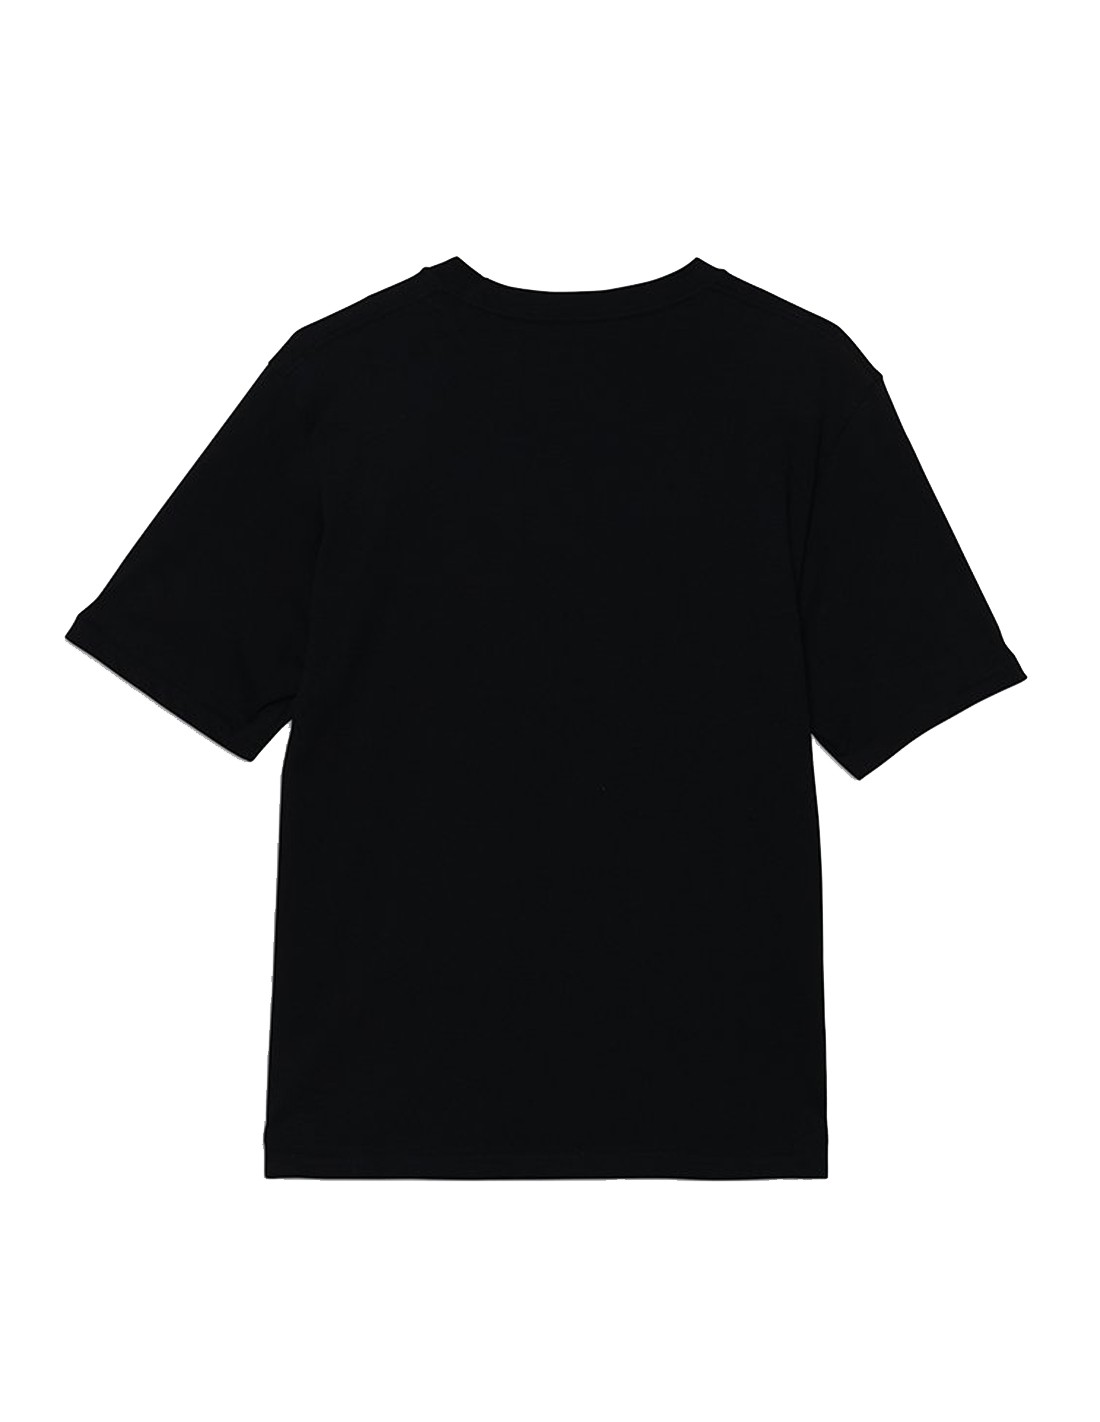 VANS T-shirt Black - OTW - Boys